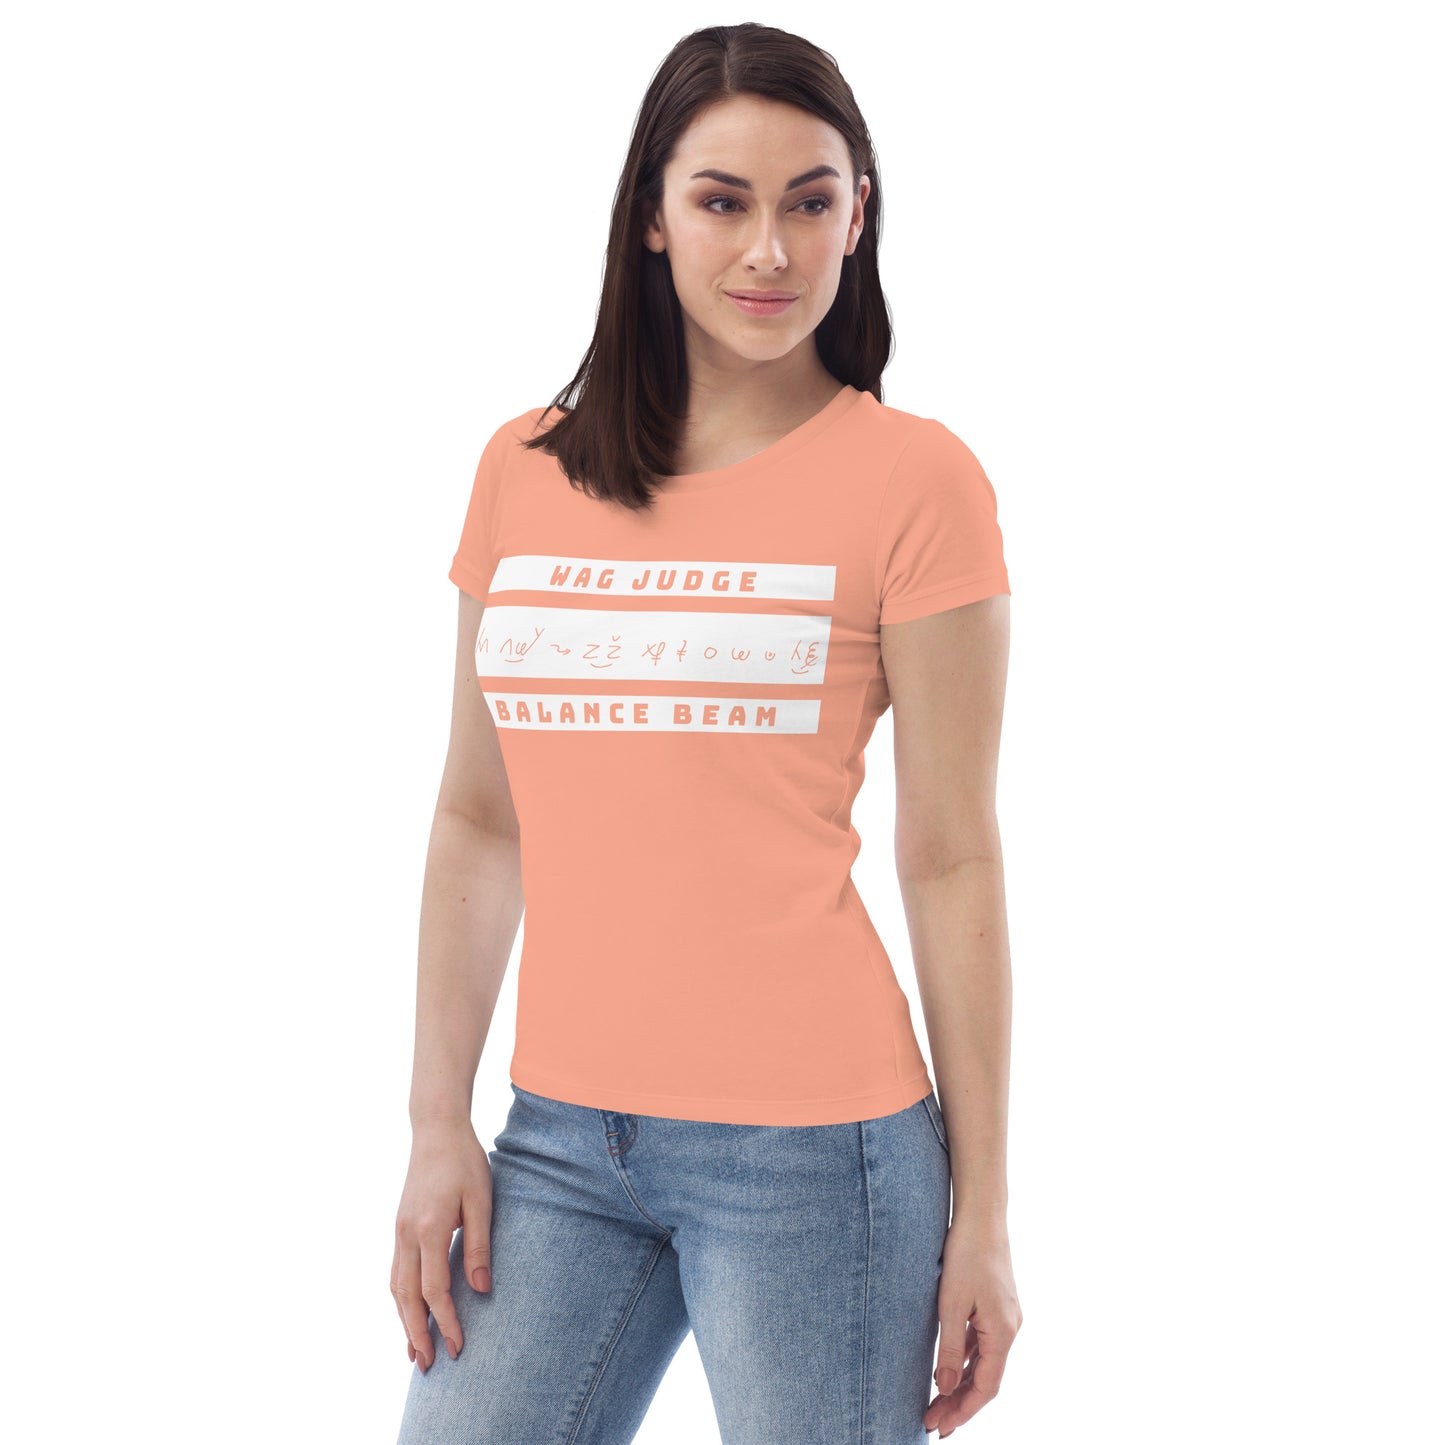 Jurylid Evenwichtsbalk - Getailleerd Eco-T-shirt voor dames